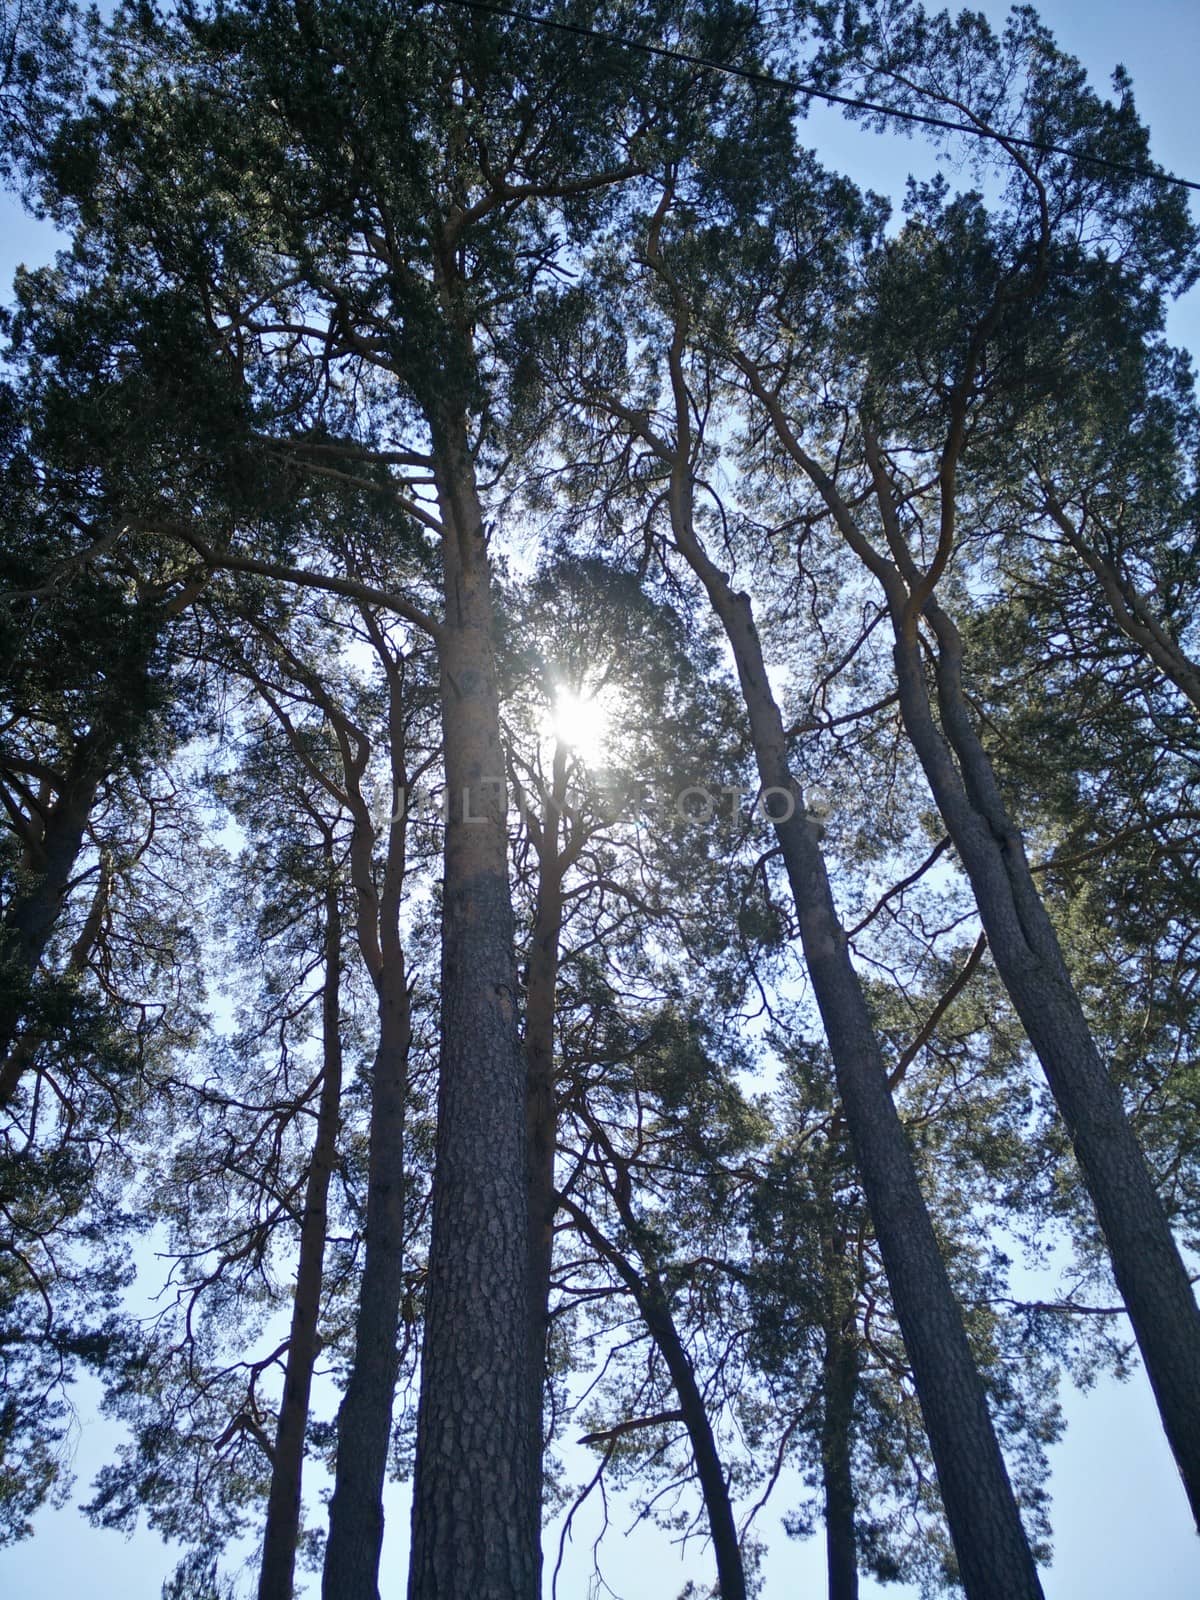 Sun in the trees by haawri